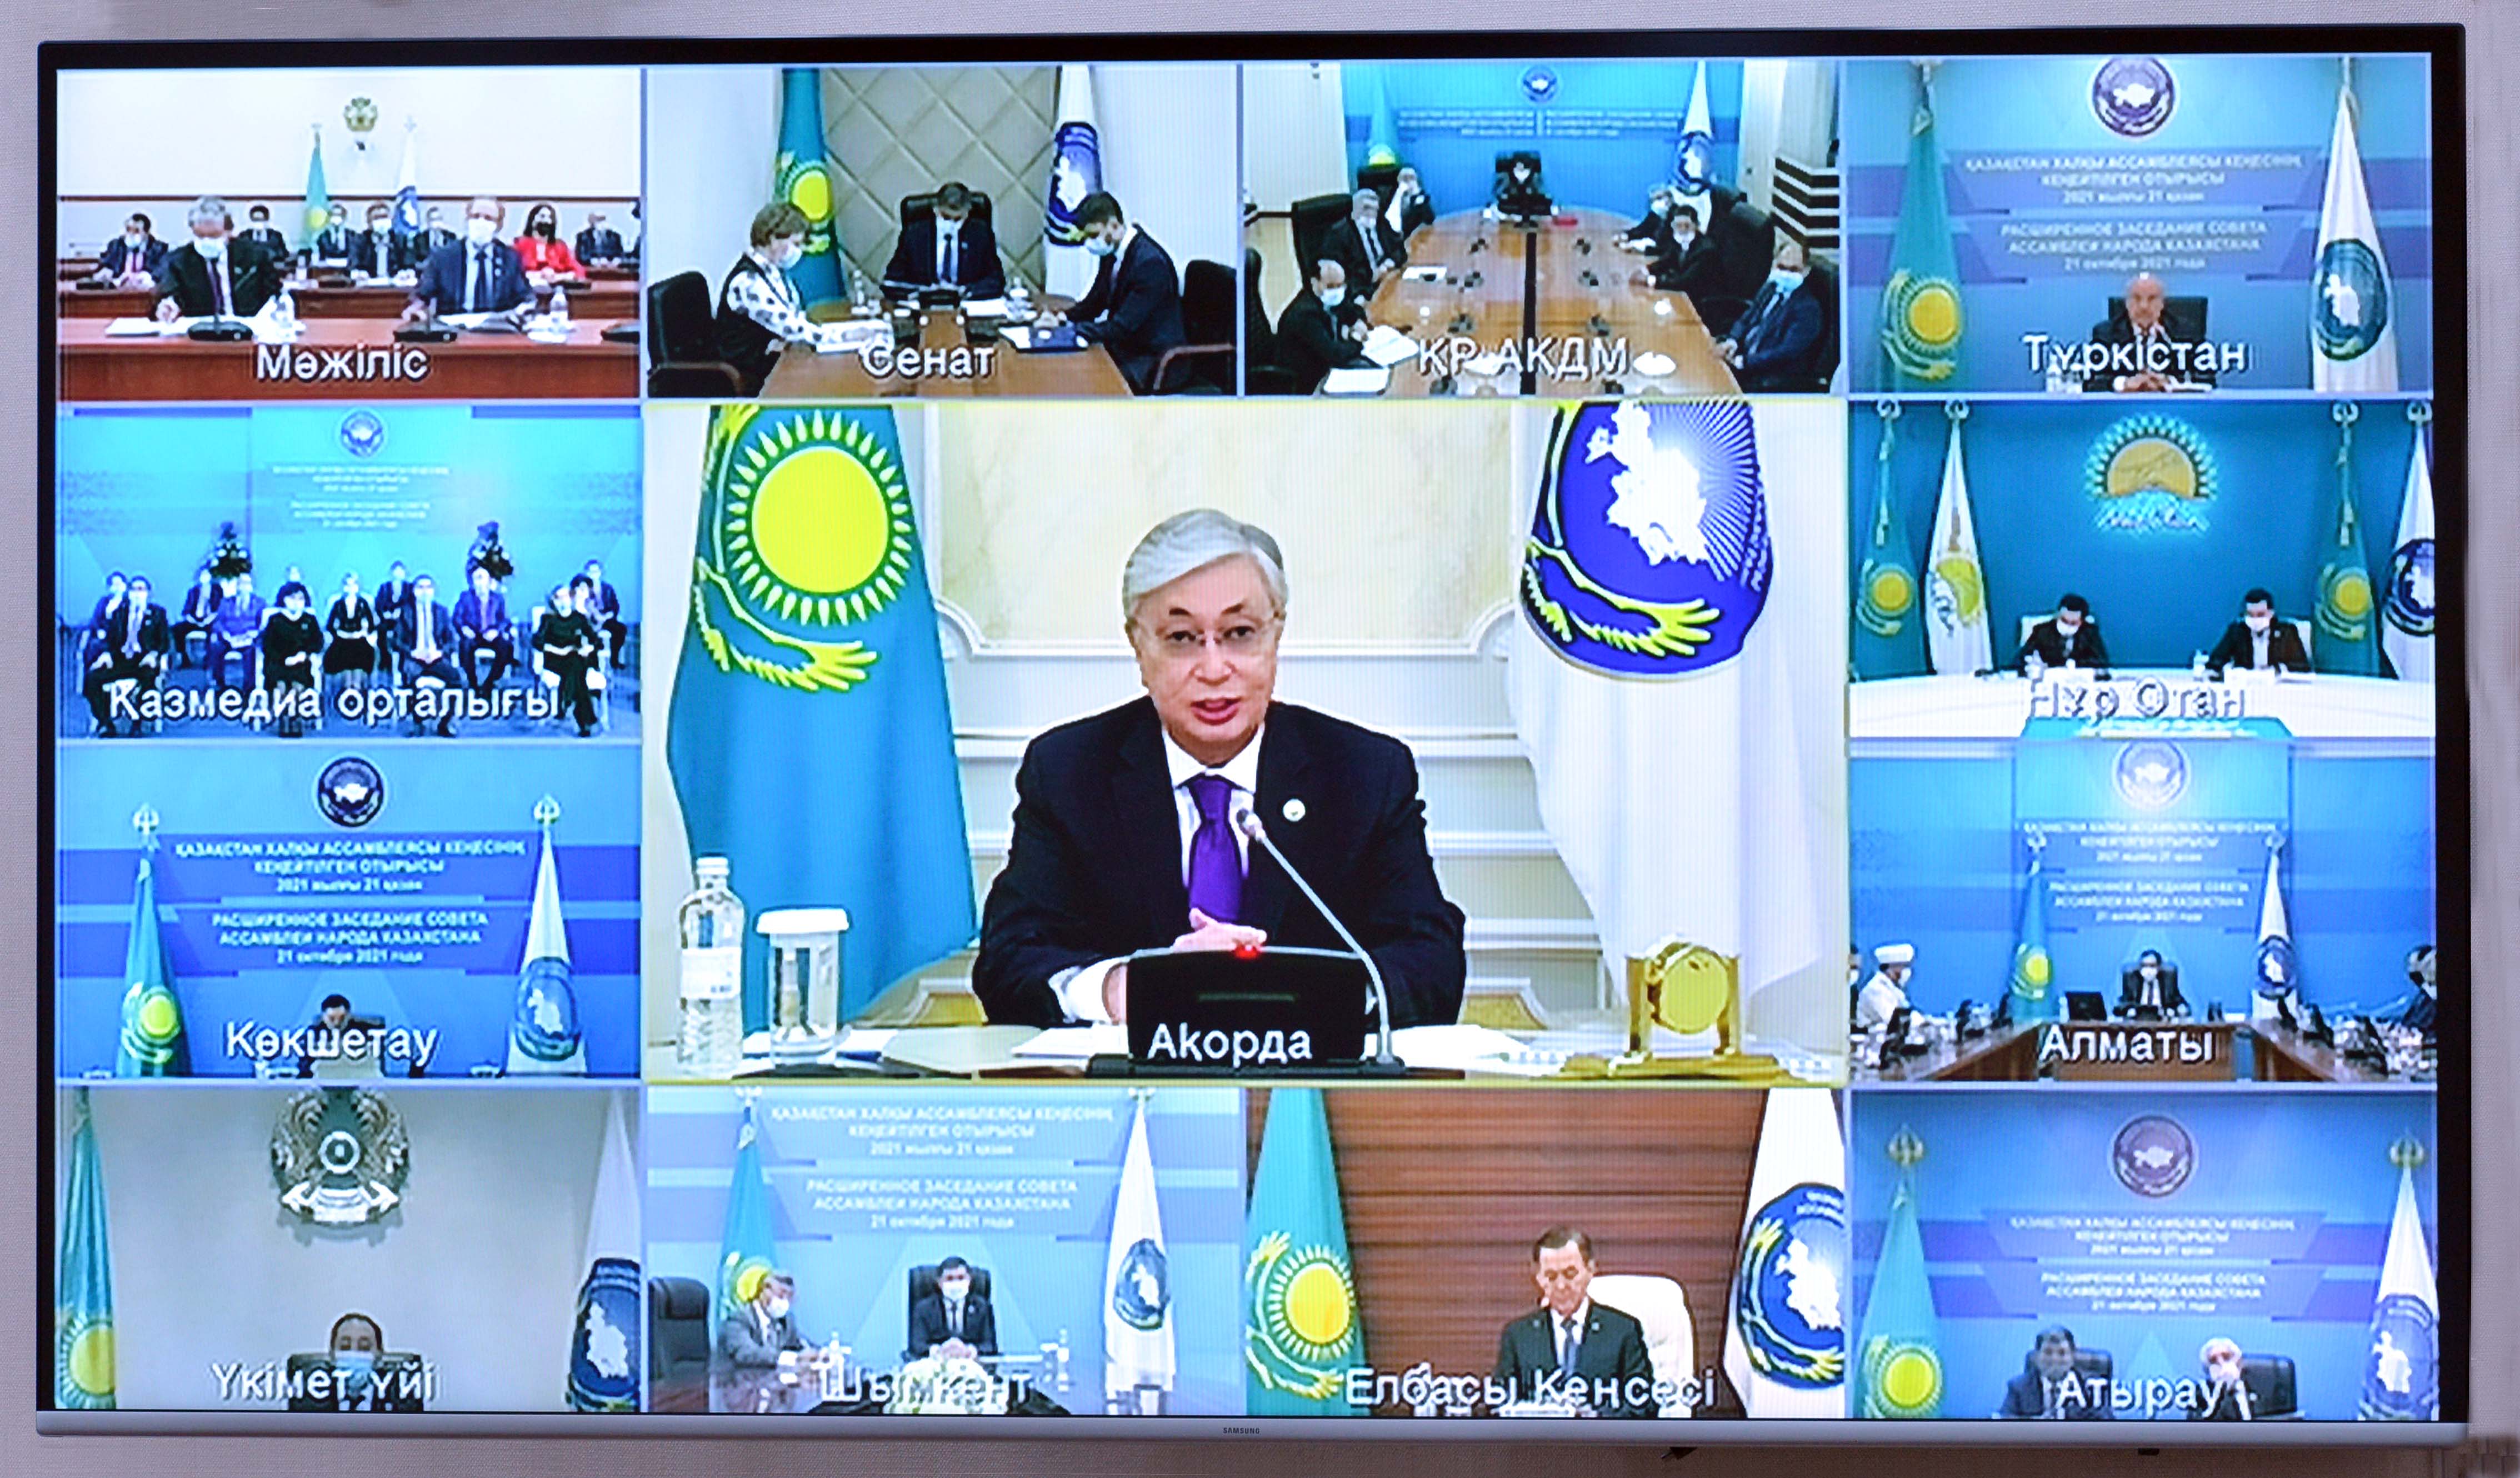 Состоялось расширенное заседание Совета Ассамблеи народа Казахстана под председательством Президента Республики Казахстан К.К. Токаева